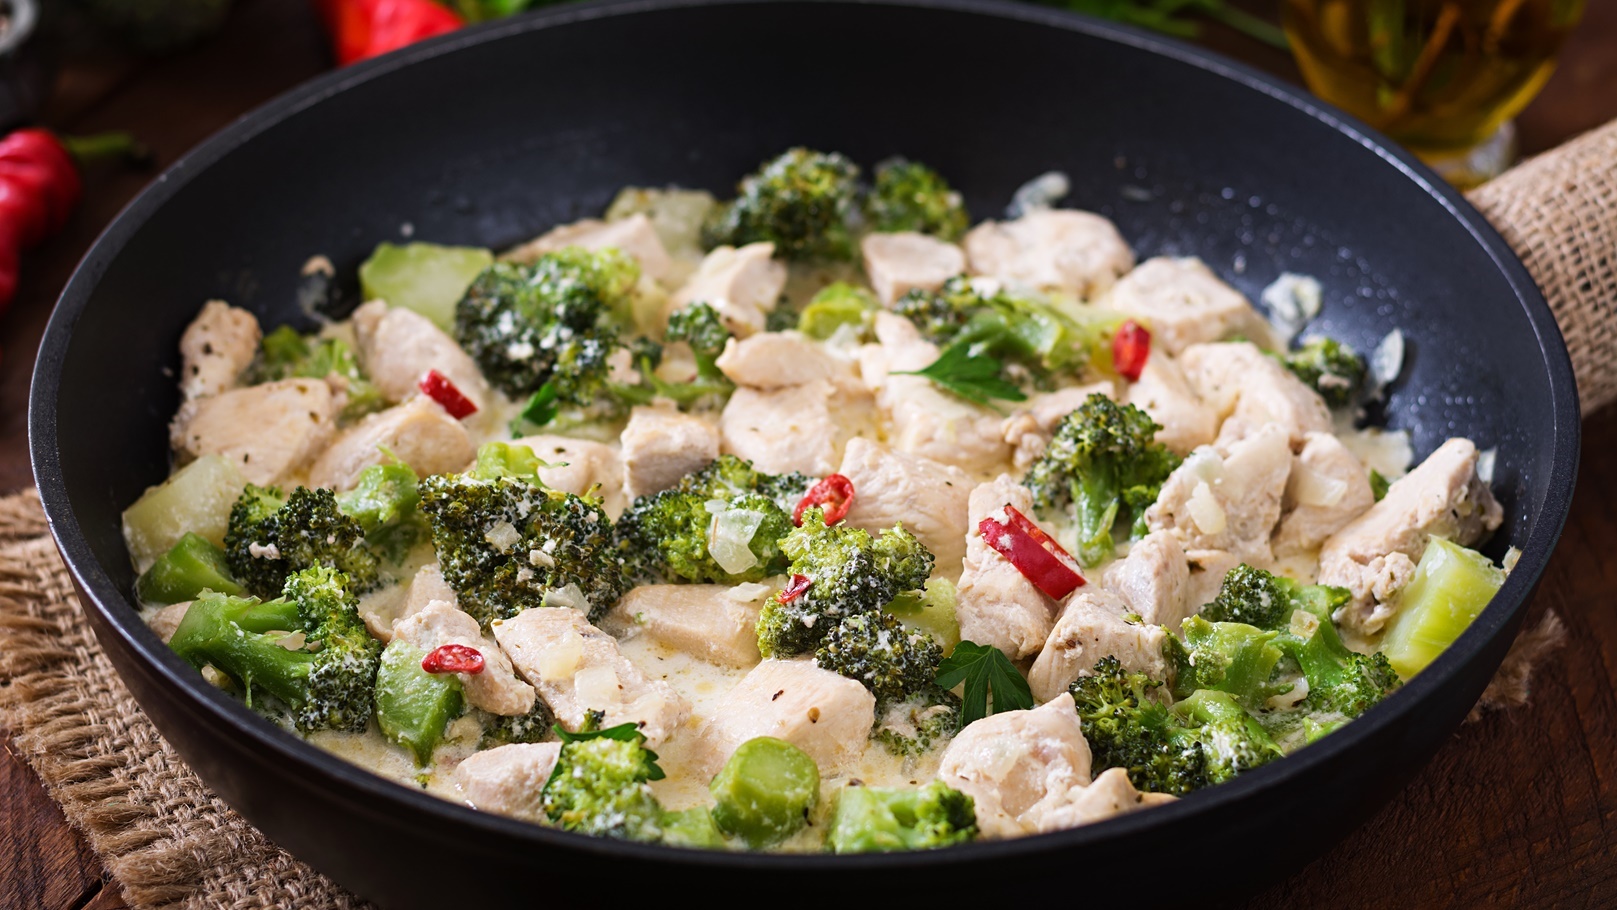 delicate-saute-chicken-with-broccoli-and-chili-pep-2021-08-26-23-06-47-utc